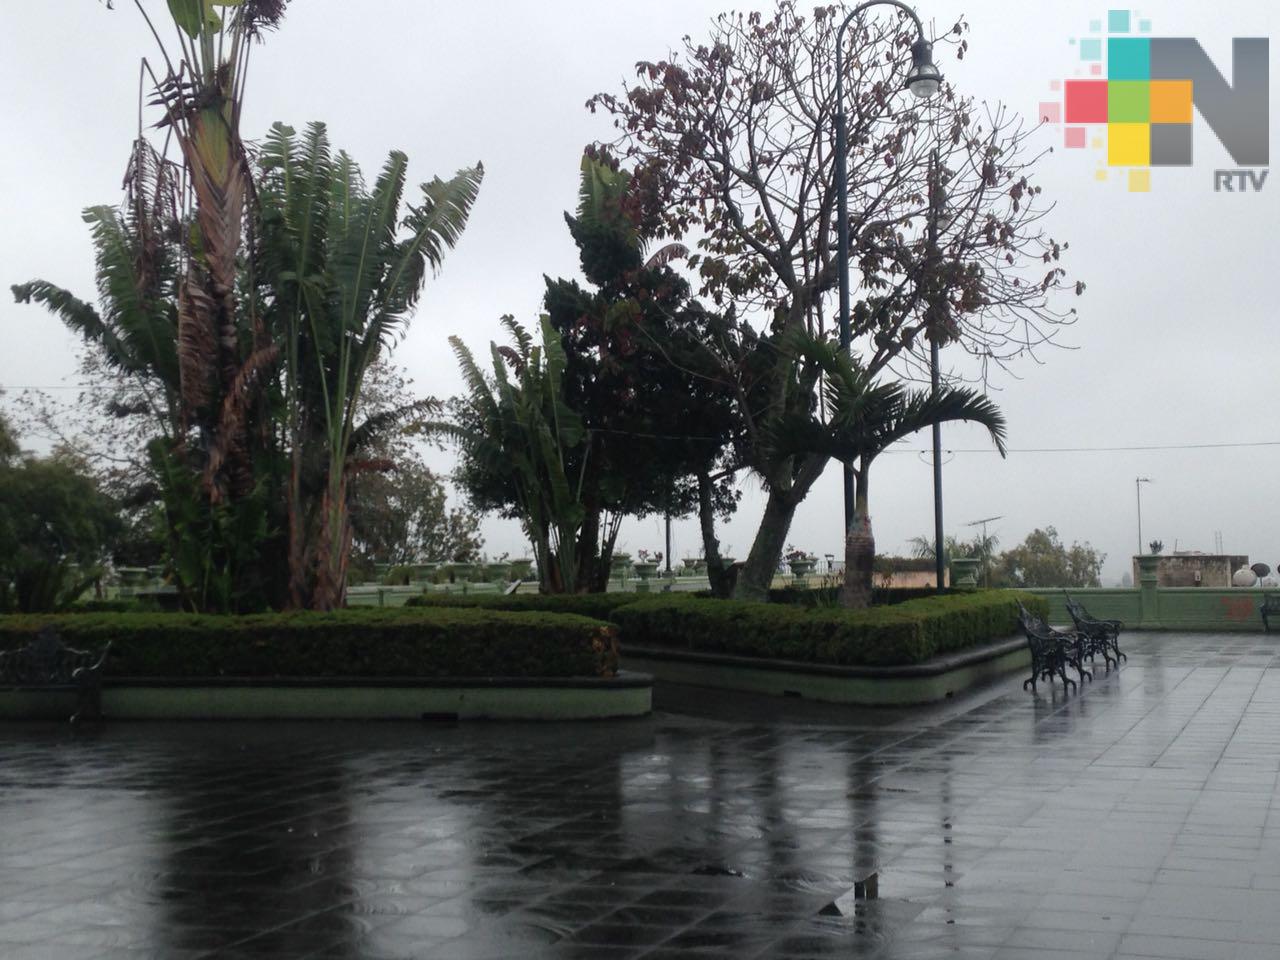 Miércoles nublado con nieblas, lloviznas y lluvias en el estado de Veracruz